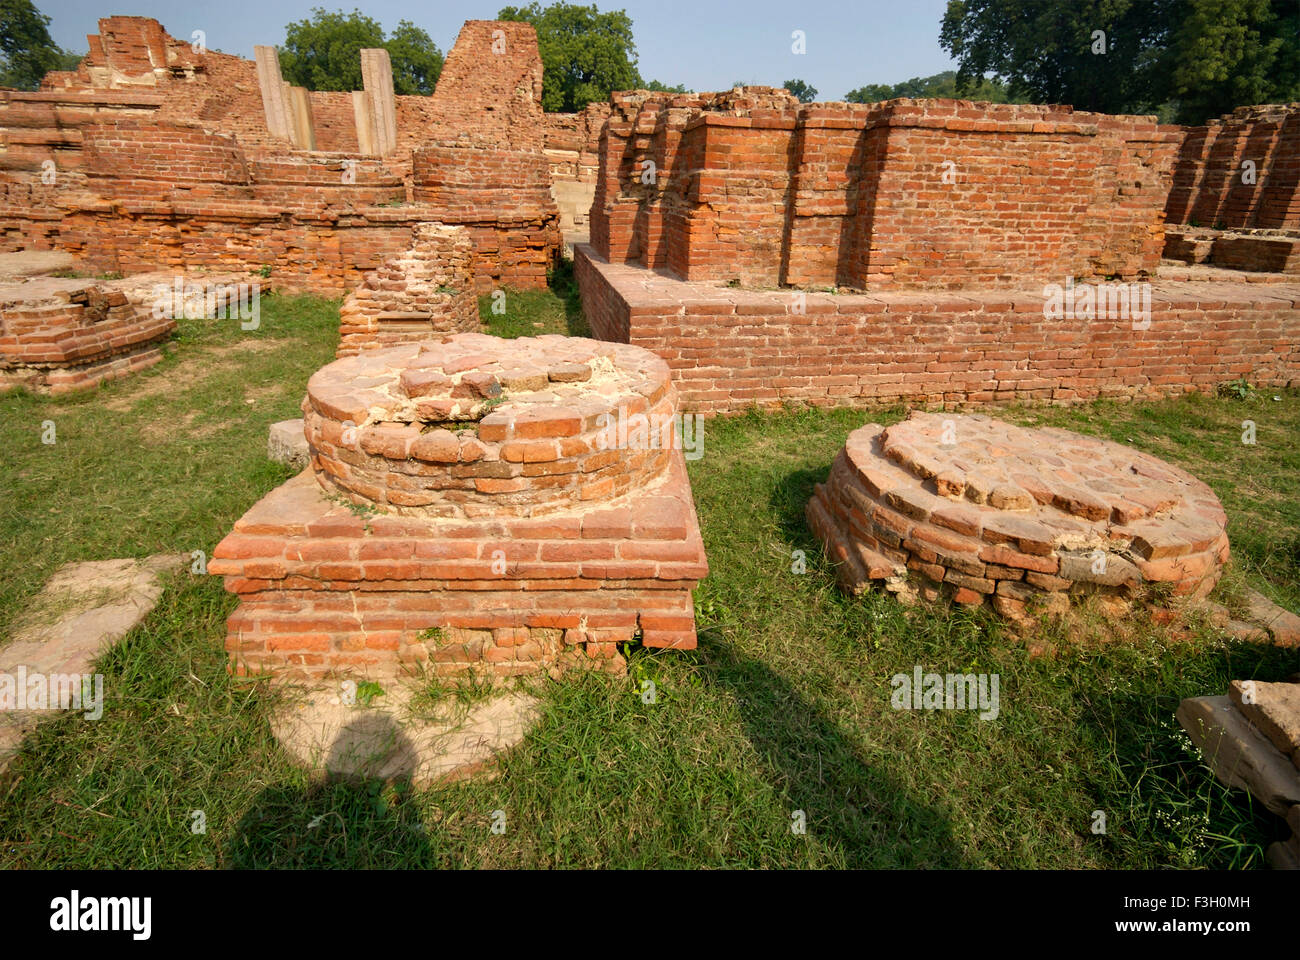 Ruined monasteries near Dhamekh stupa ; Sarnath ; Varanasi ; Uttar Pradesh ; India Stock Photo